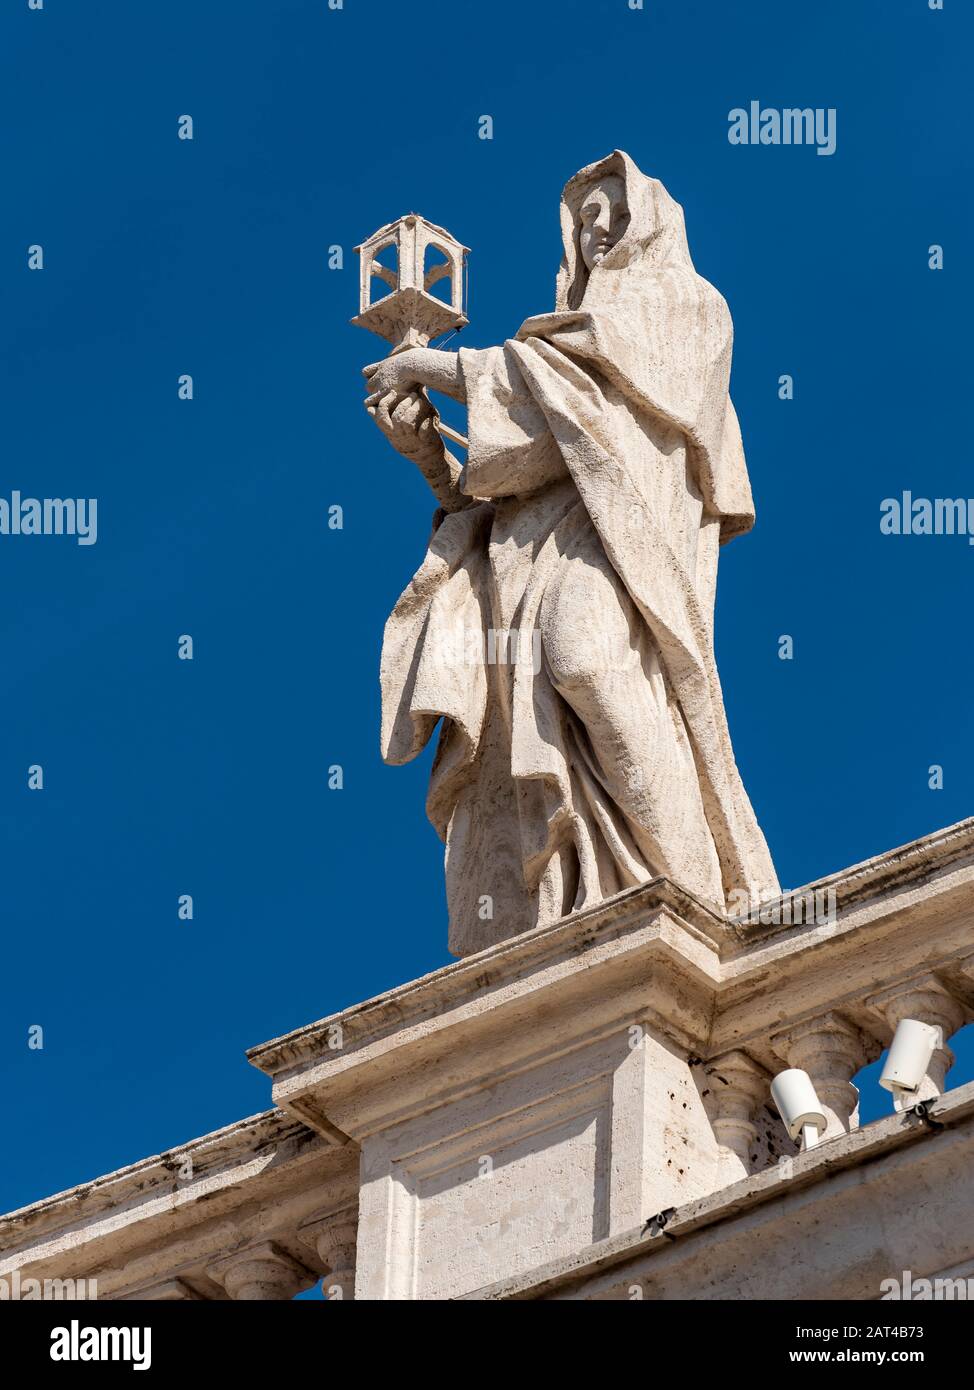 Statua di Santa Chiara d'Assisi sui colonnati del Bernini, Piazza San Pietro, Vaticano, Roma, Italia Foto Stock